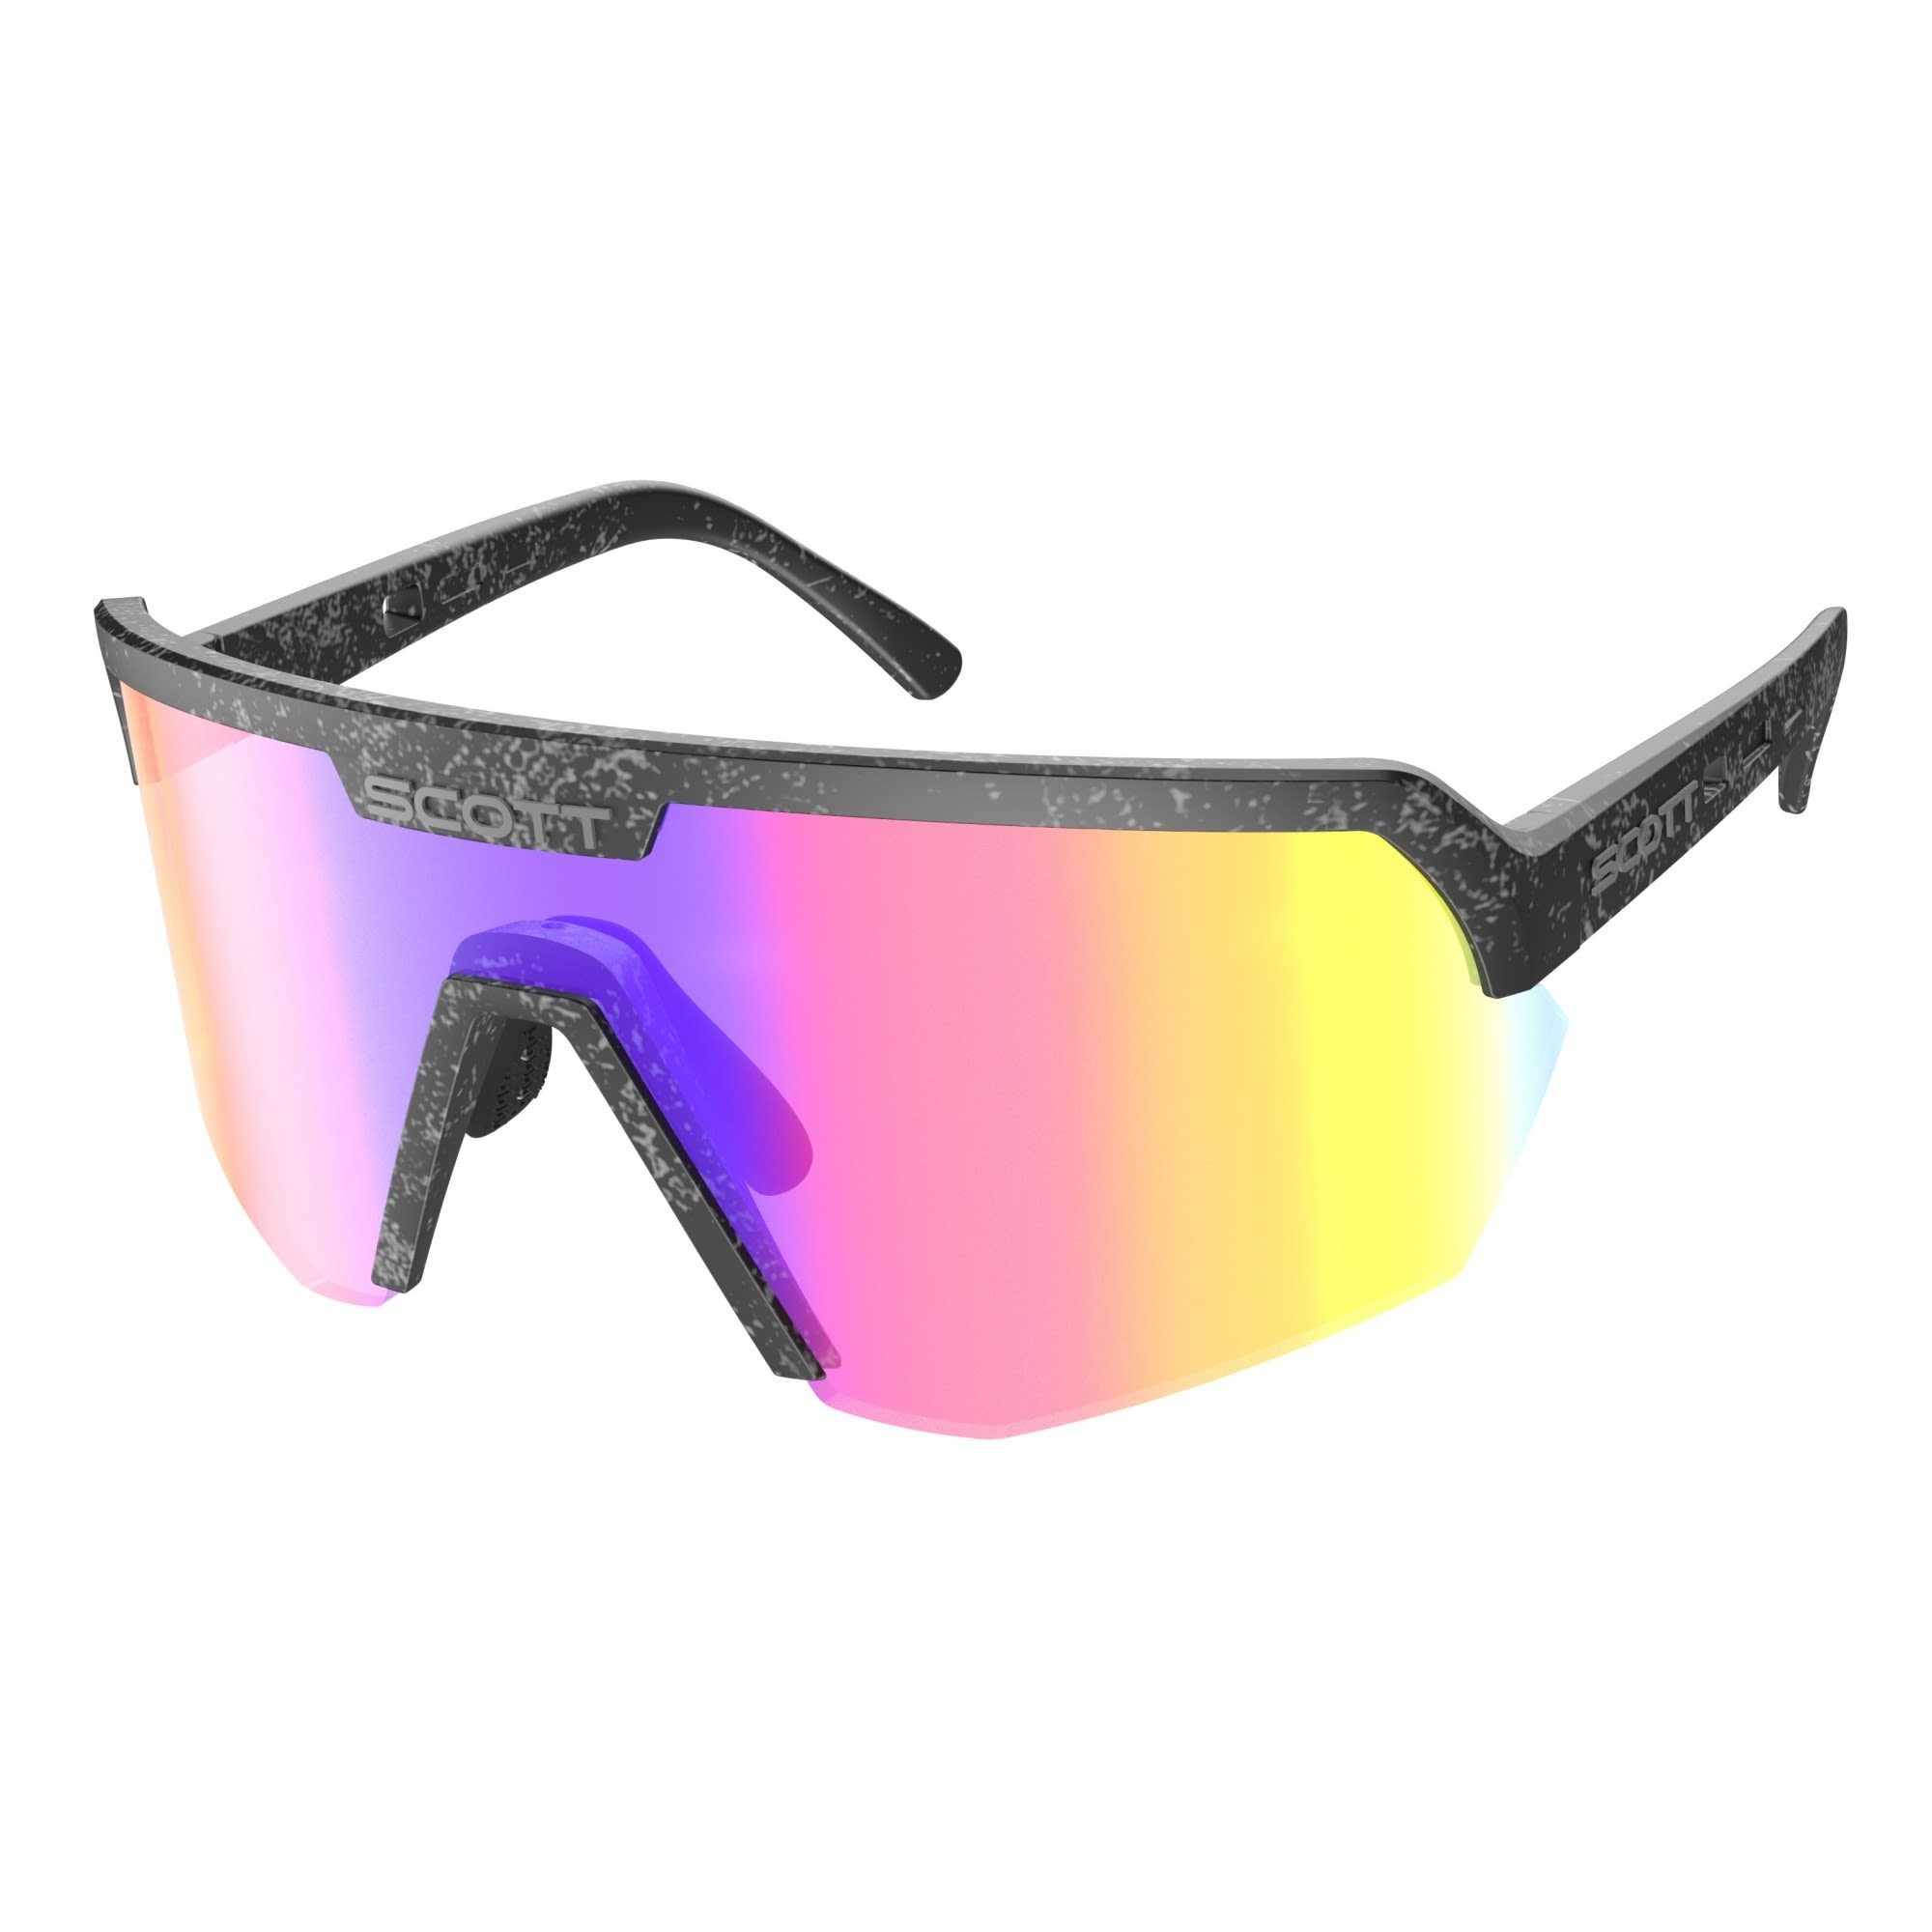 Scott Fahrradbrille Scott Sport Shield Sunglasses Accessoires Marble Black - Teal Chrome